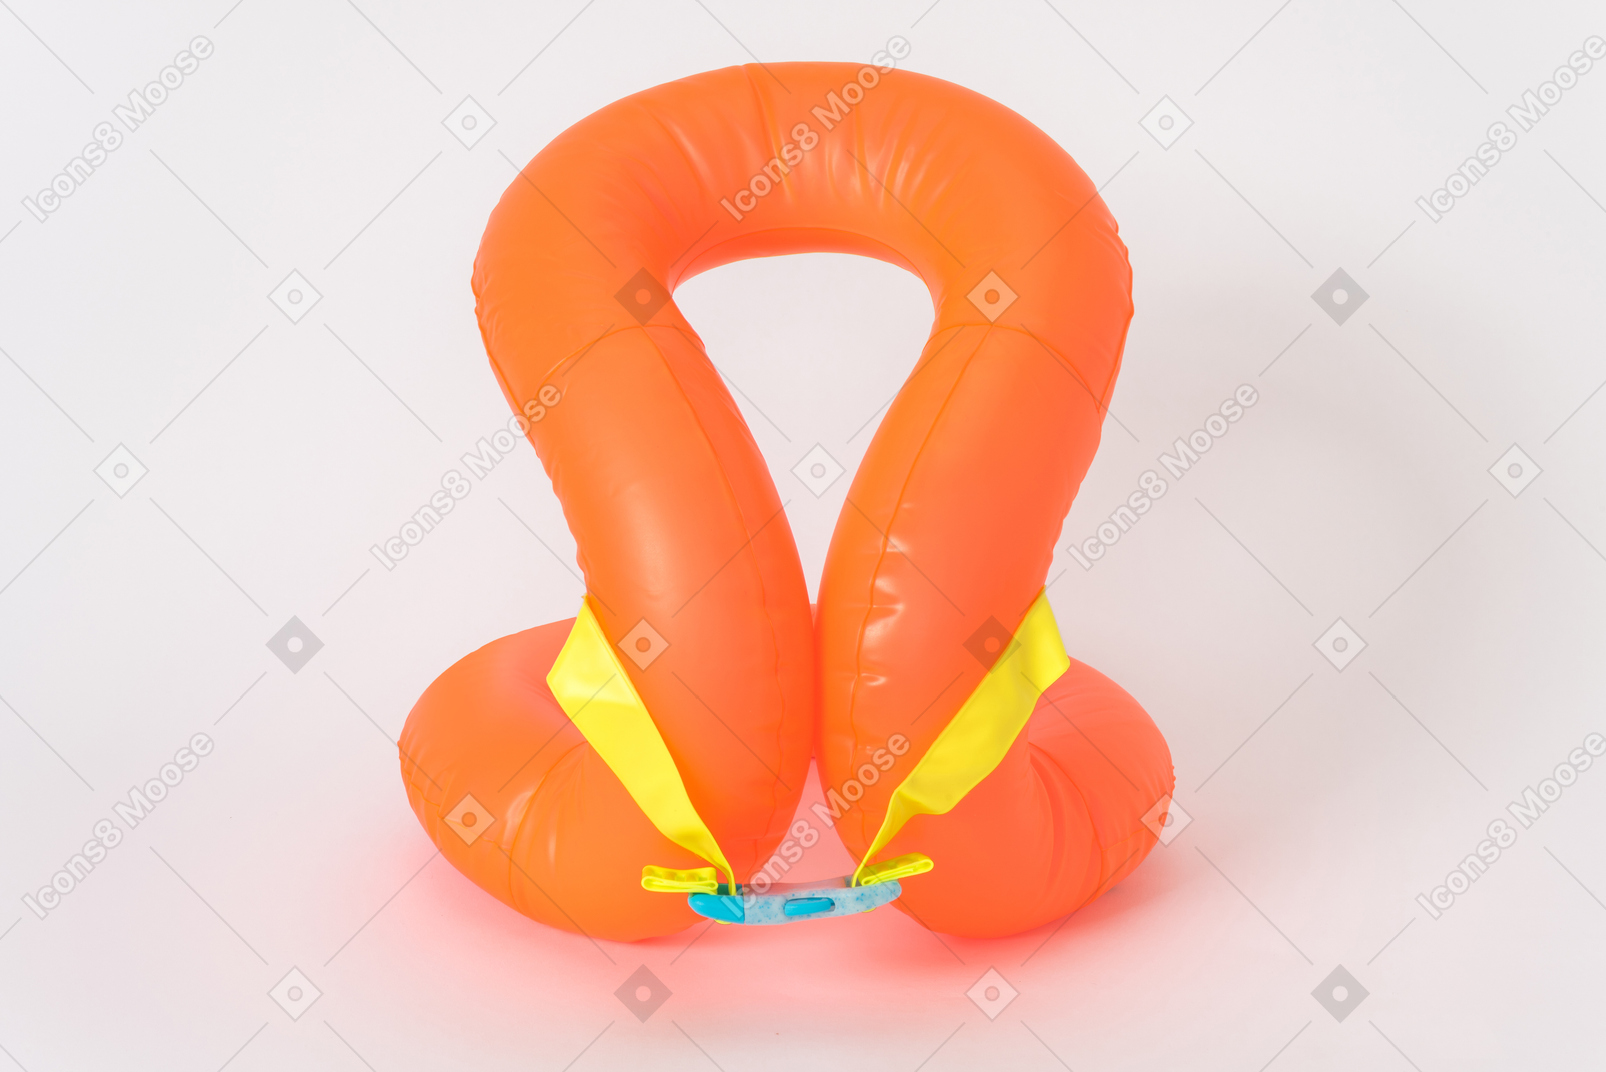 Giubbotto galleggiante arancione su sfondo bianco